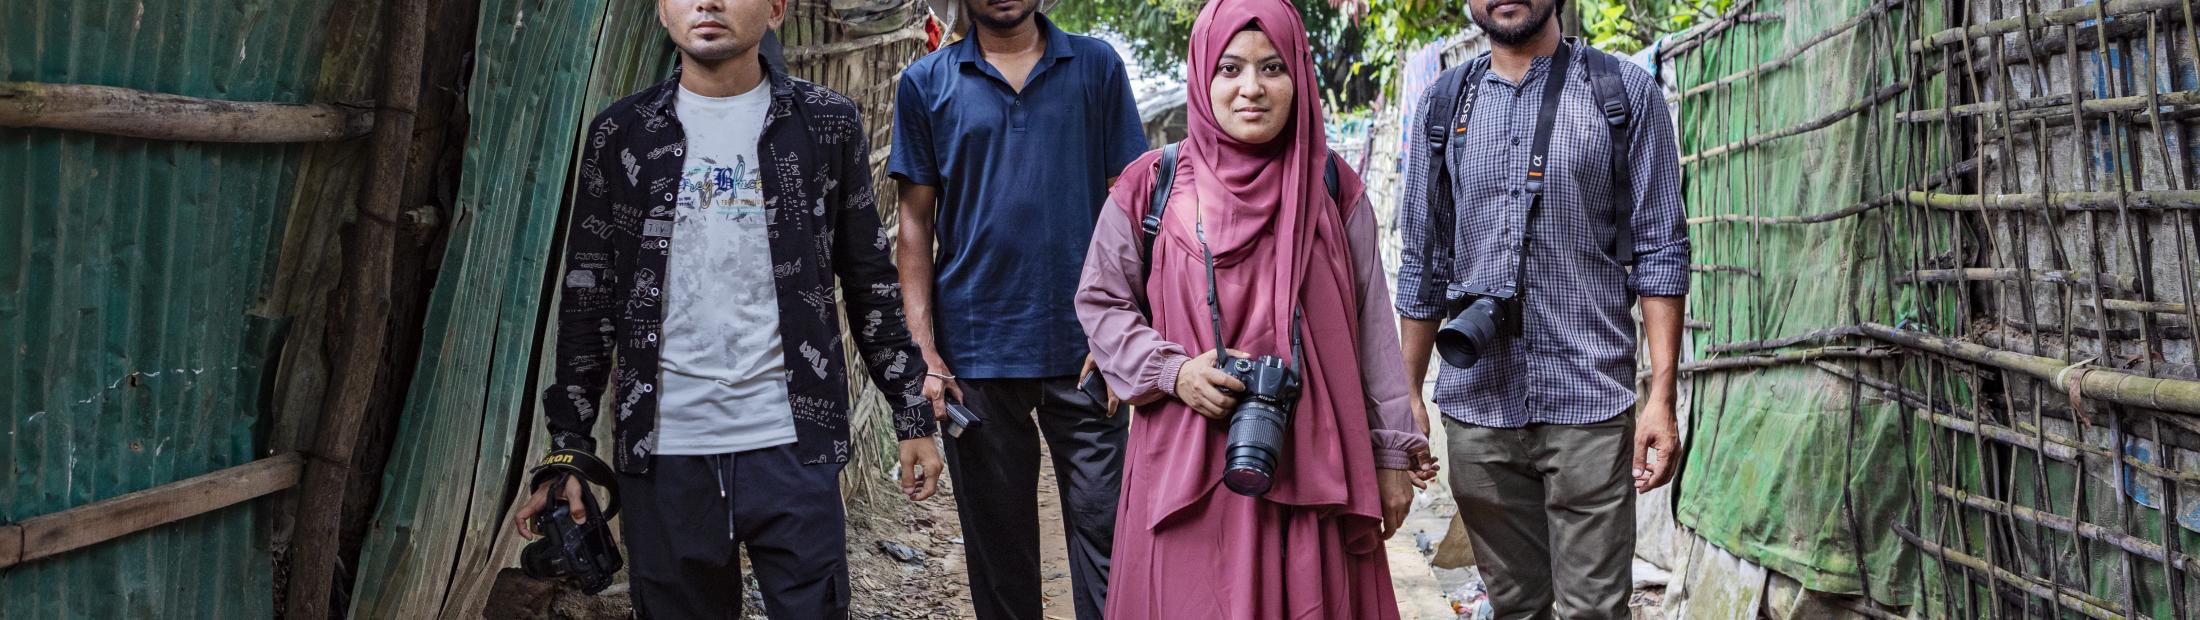 Com fotografias, palavras e ações, os contadores de histórias dos refugiados Rohingya fazem do desespero uma esperança 